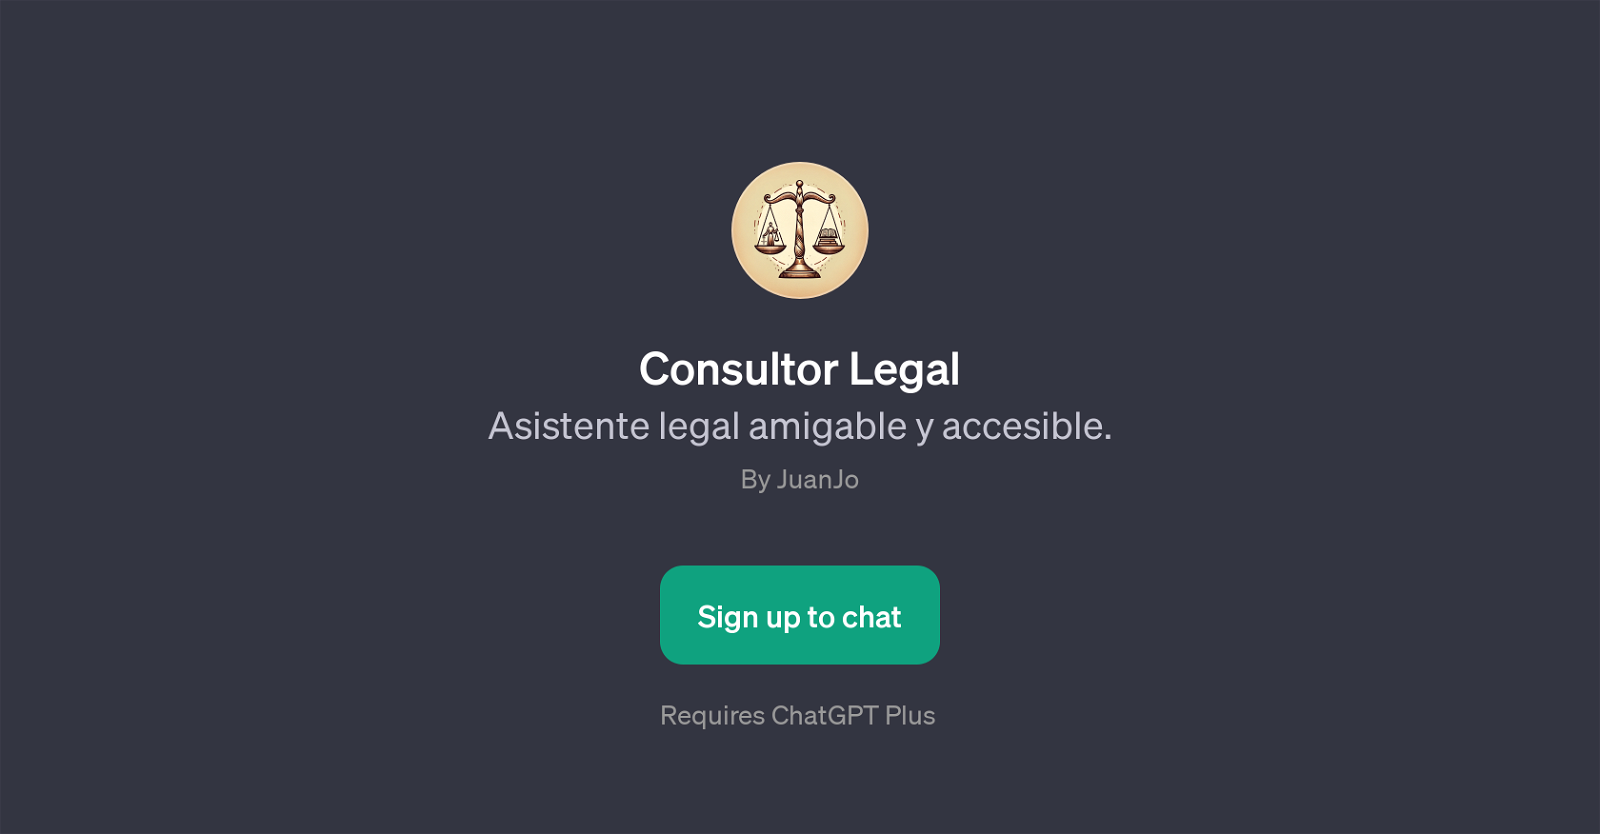 Consultor Legal website